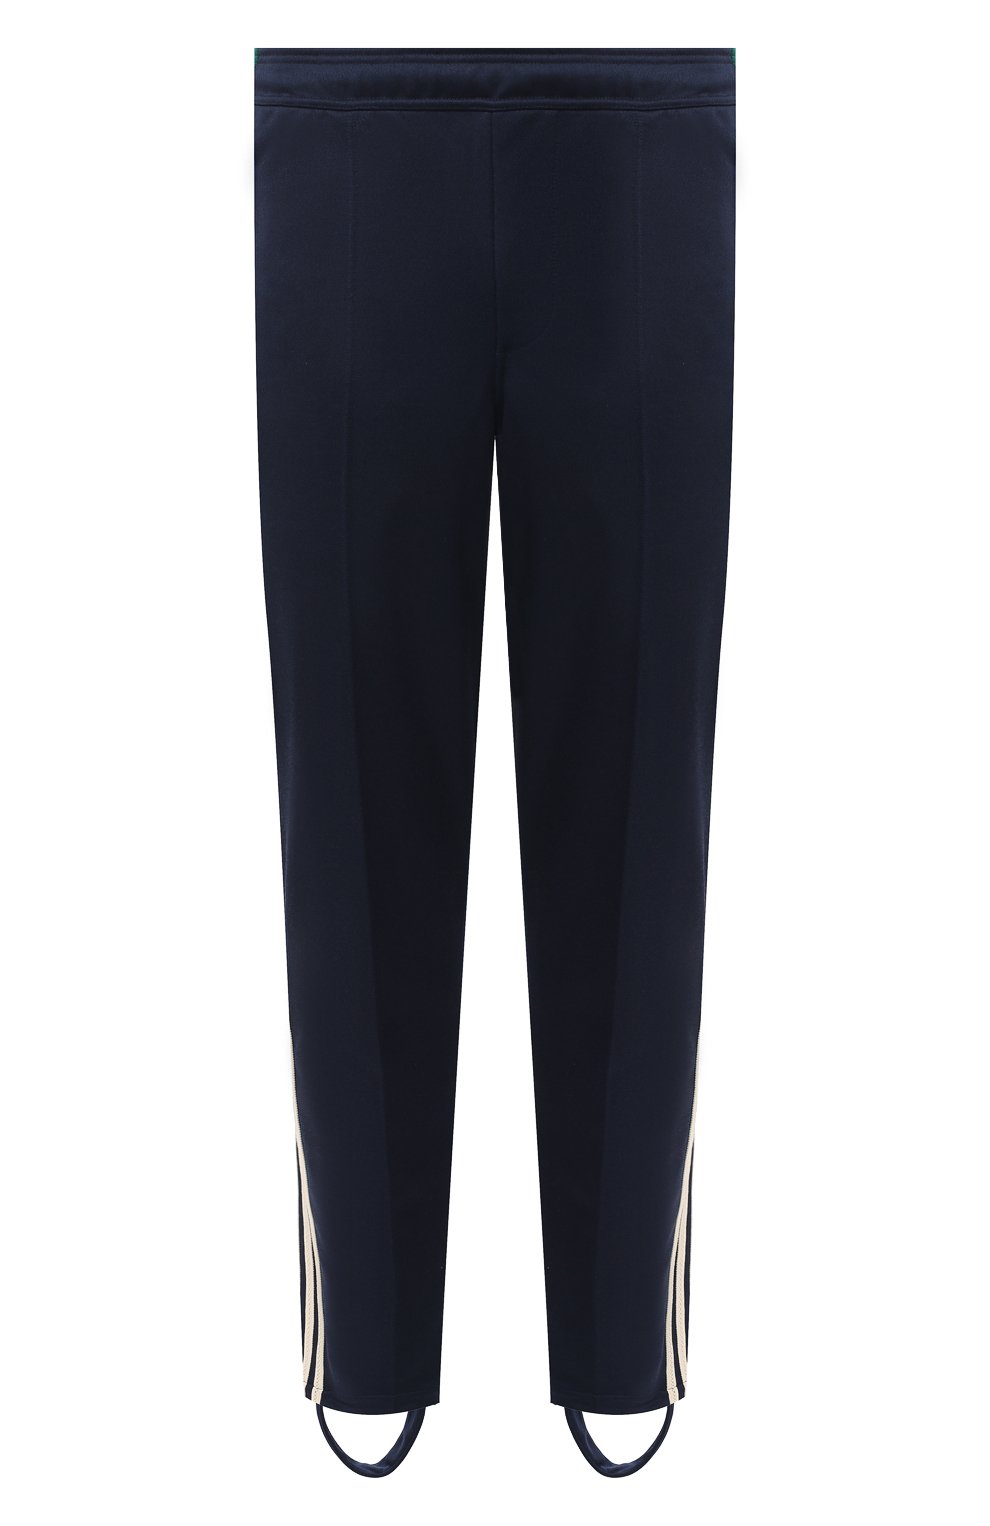 Мужские синие брюки adidas originals x wales bonner ADIDAS ORIGINALS купитьв интернет-магазине ЦУМ, арт. GL5188